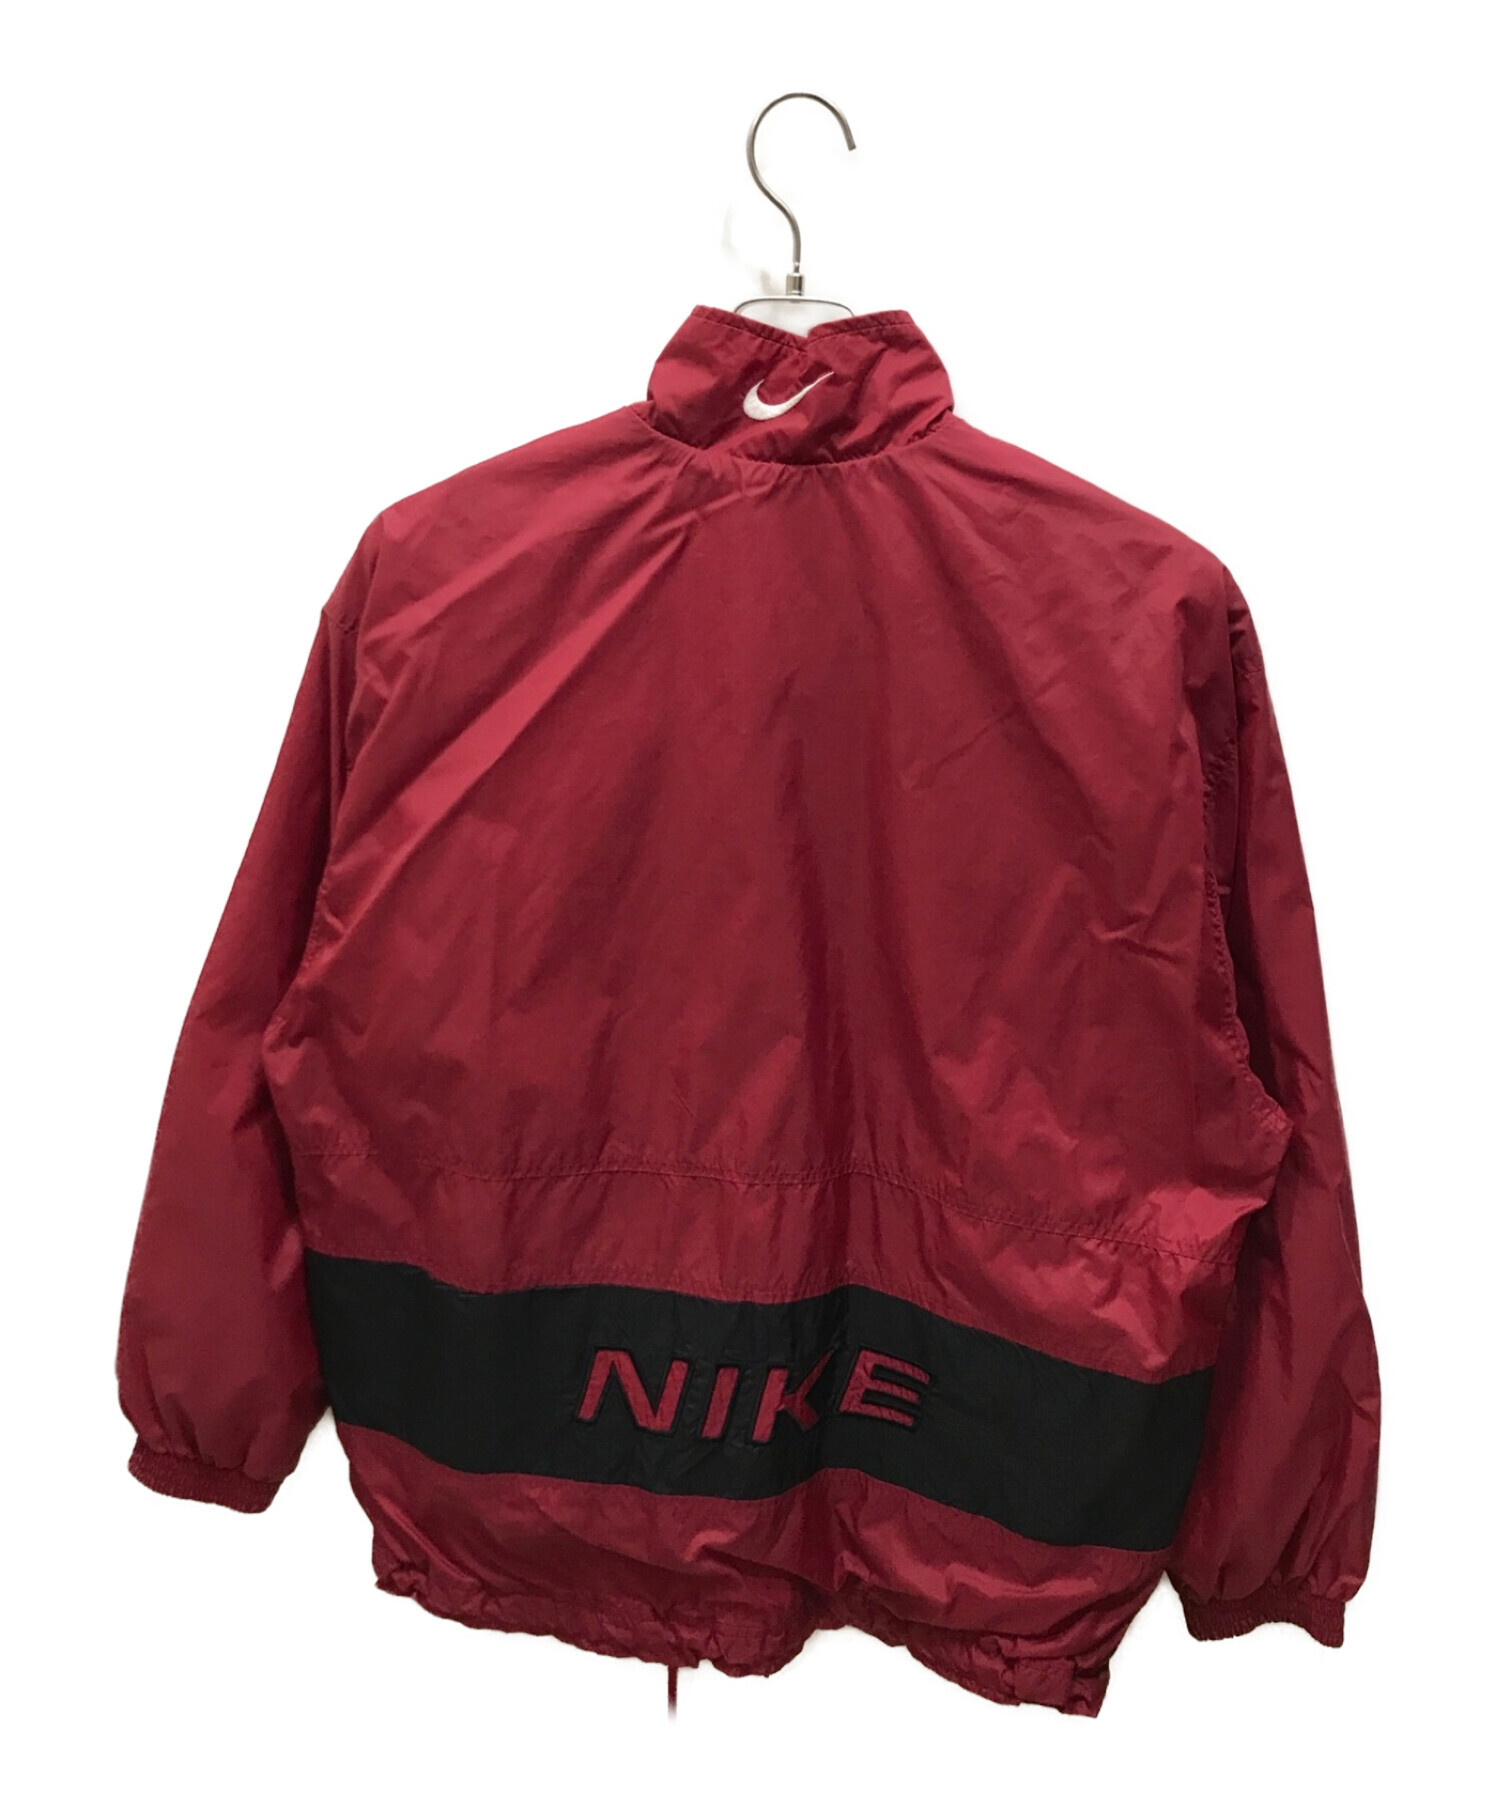 NIKE (ナイキ) ジップアップナイロンジャケット レッド サイズ:M